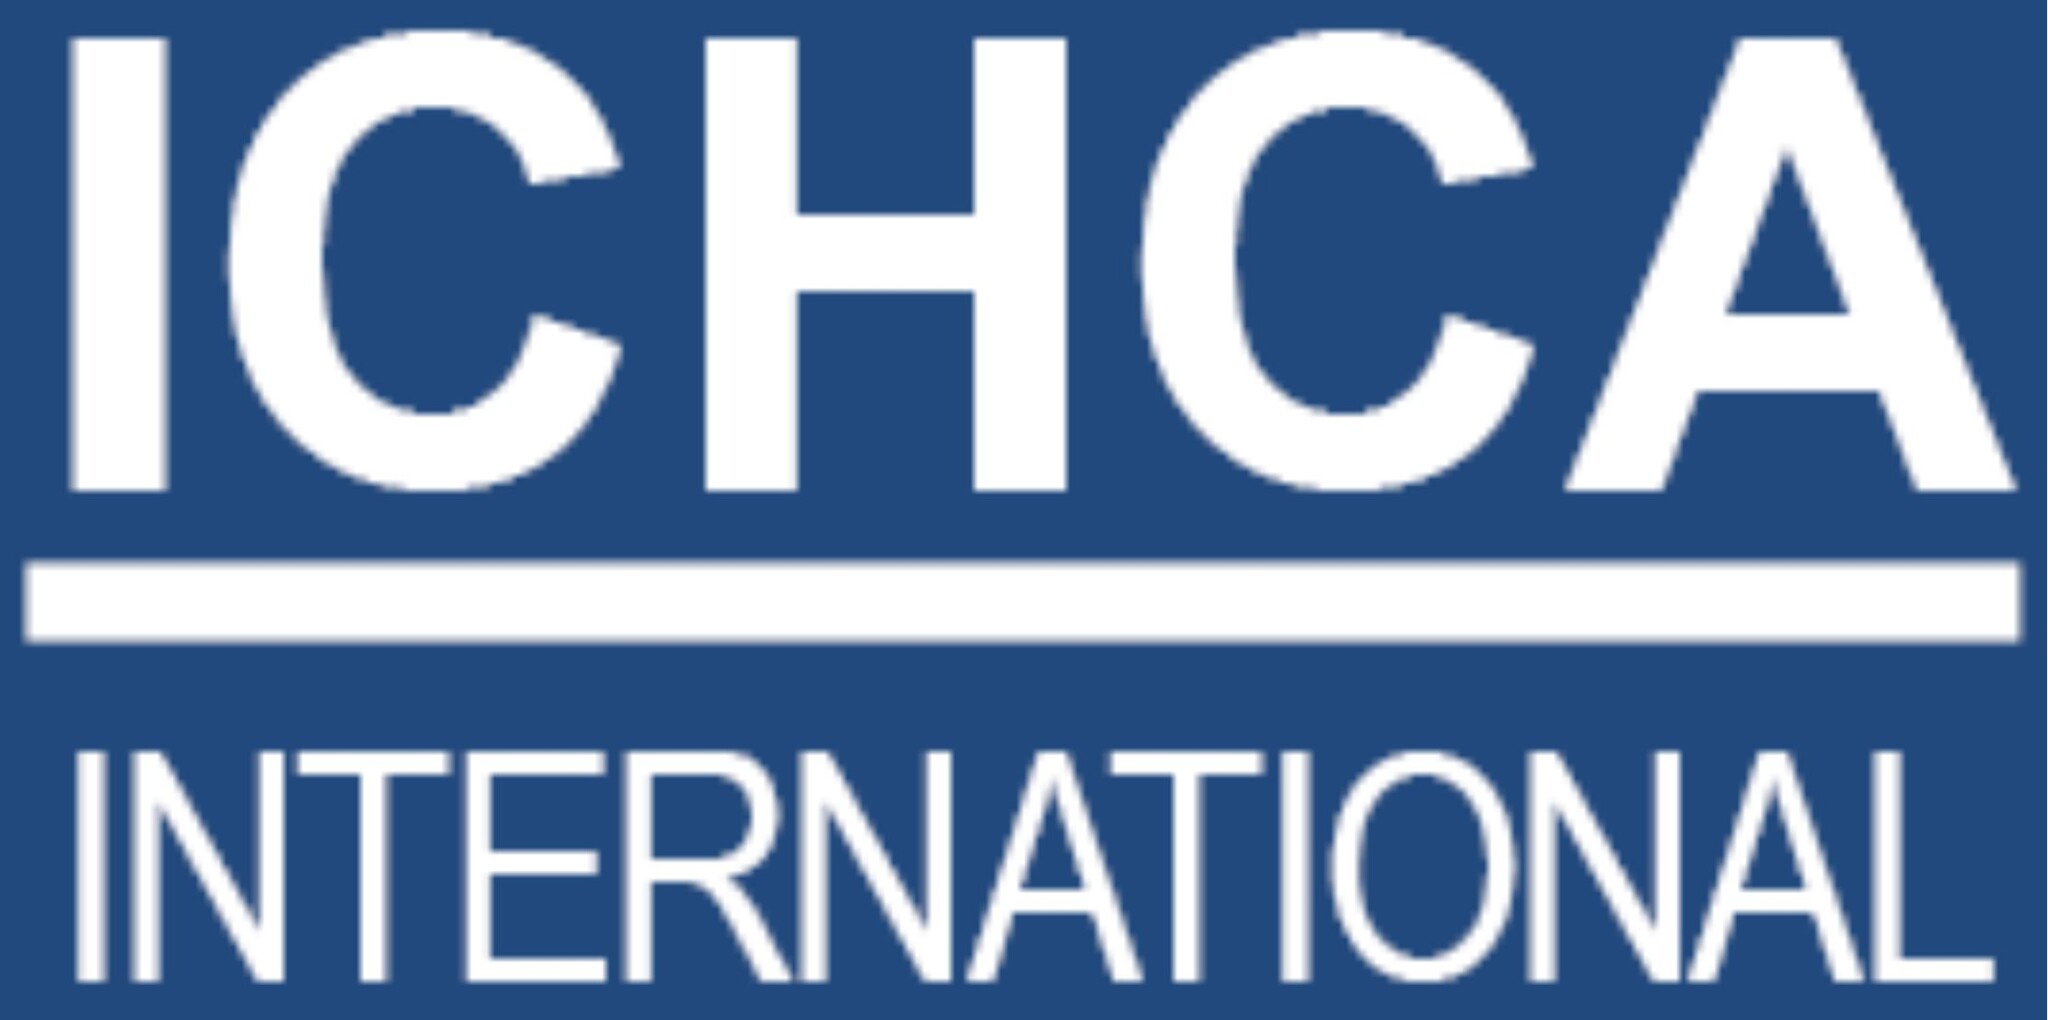 Warehousing Safety Guidance - ICHCA International